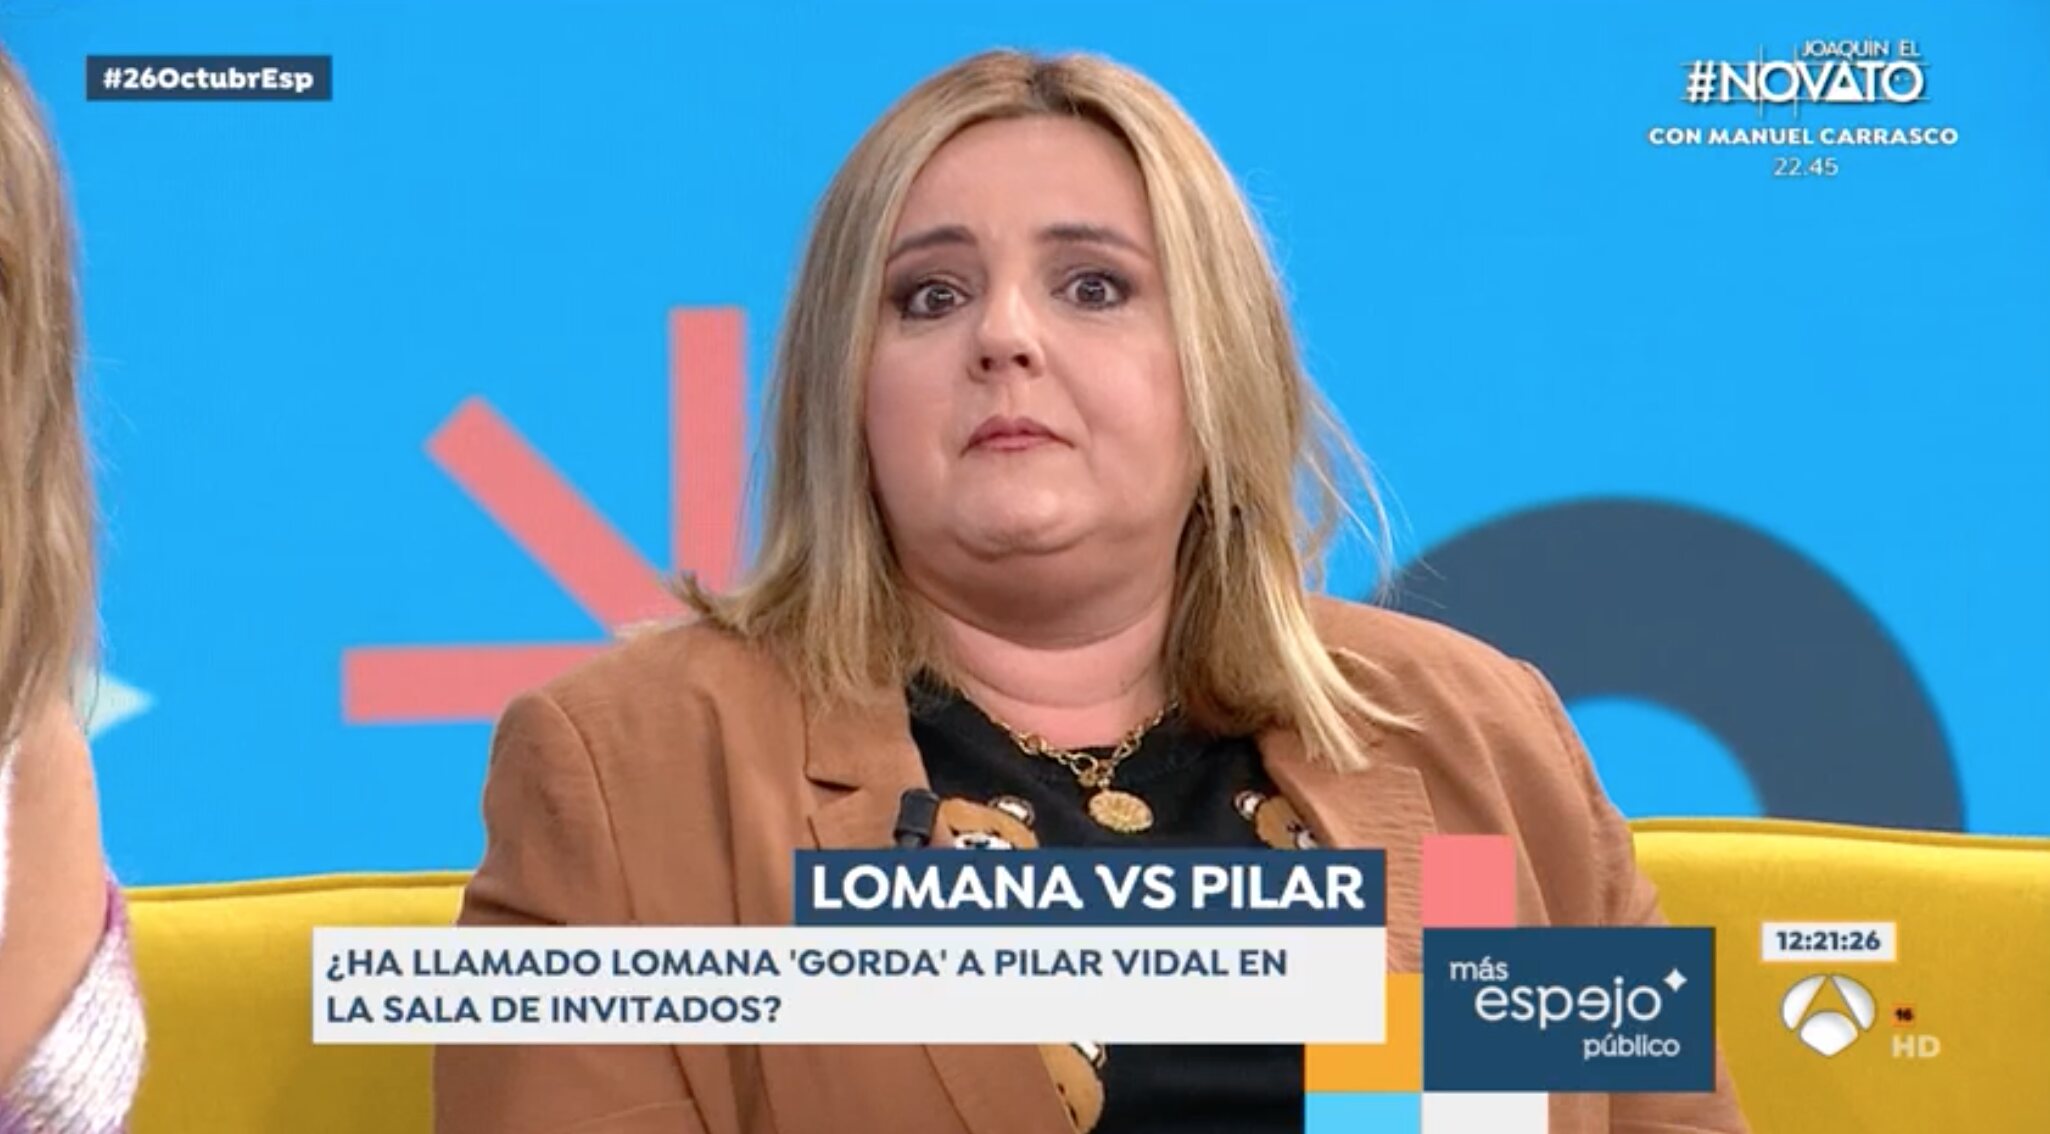 Pilar Vidal acabó llorando al reconocer que su madre también le llama gorda | Foto: Antena3.com